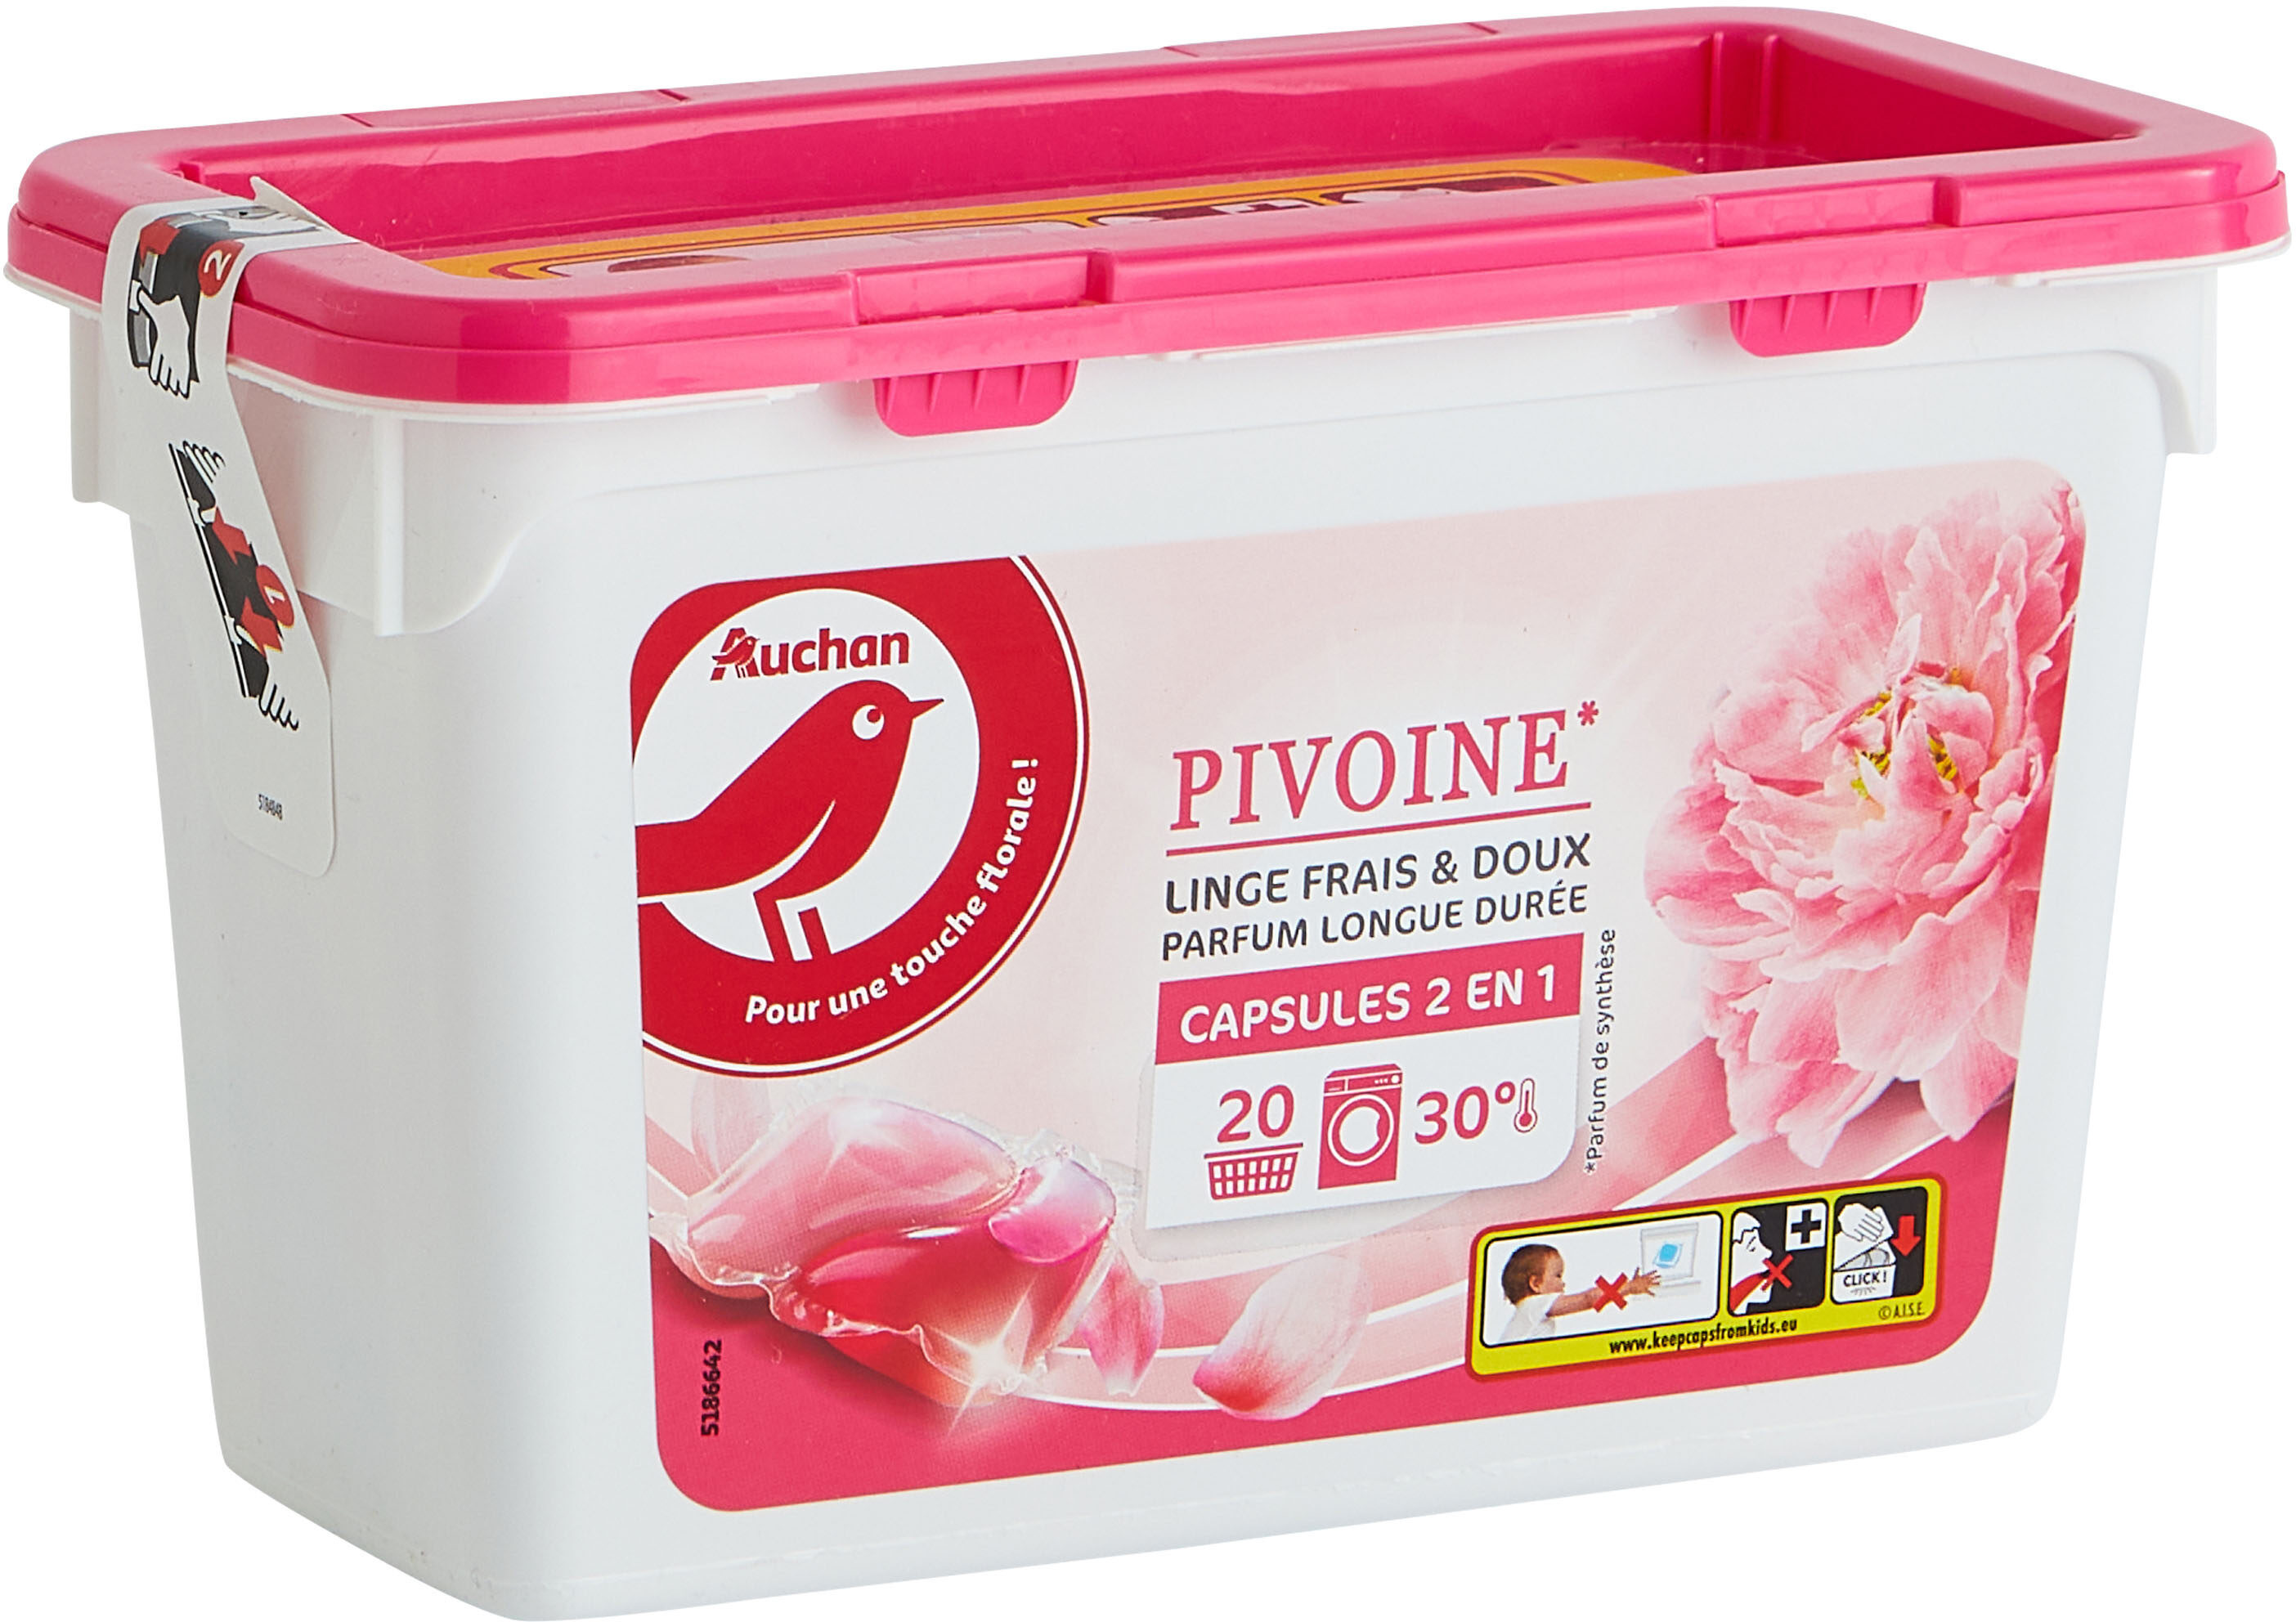 Auch lessive caps floral pivoine 20pcs - Product - fr